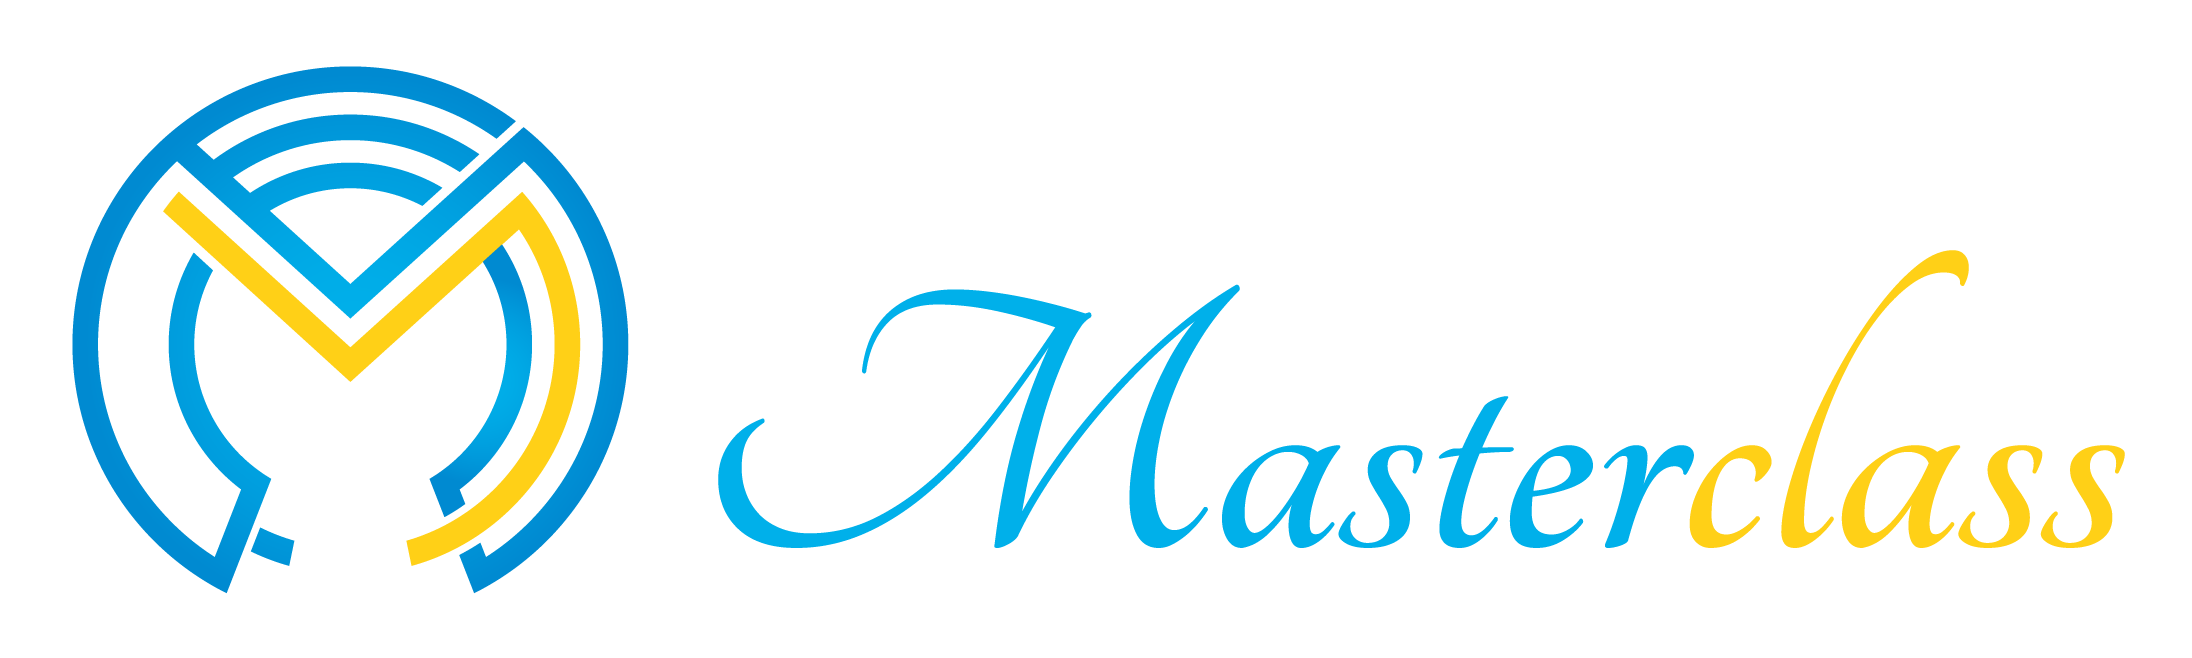 MM-Meta-Master-H-Logo